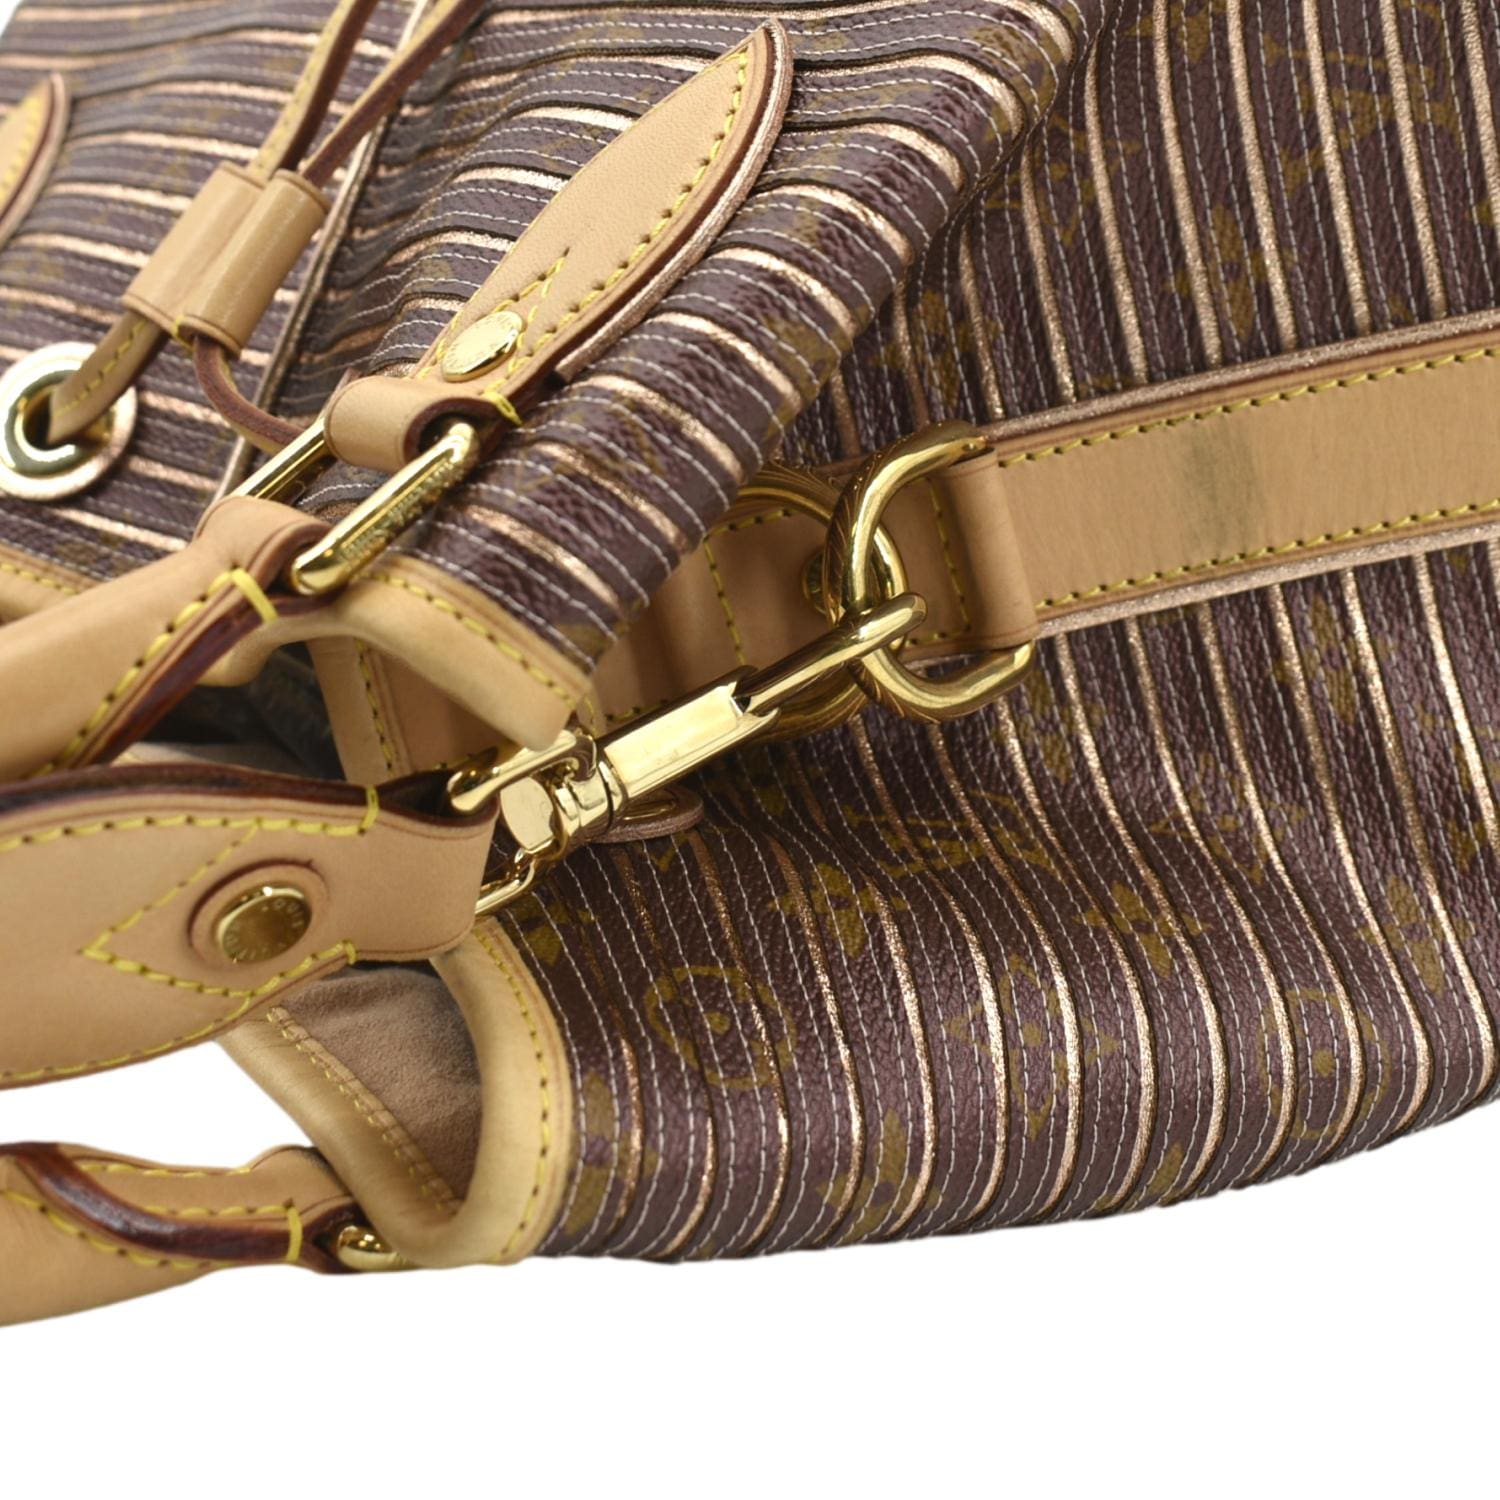 Louis Vuitton Eden Noe Peche Monogram Limited Edition Bag For Sale